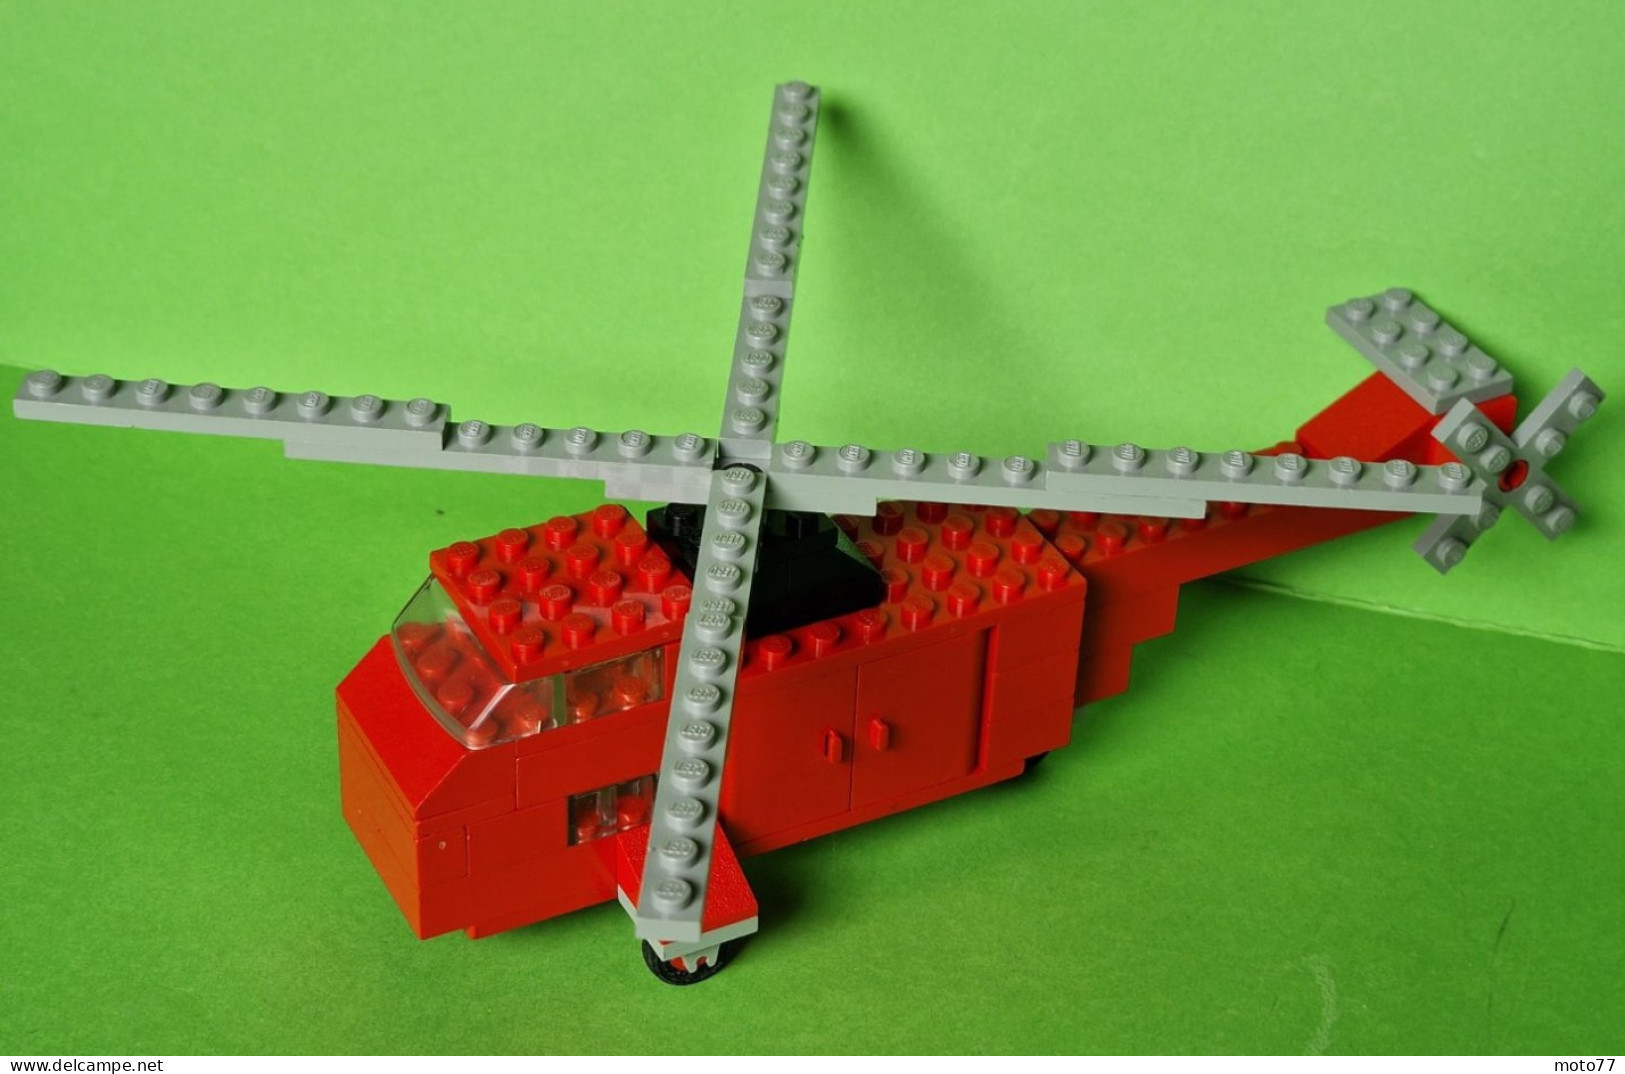 Lot Ancien Jeux De Construction LEGO 691 - HÉLICOPTÈRE - Document De Montage - Vers 1970 - Lego System